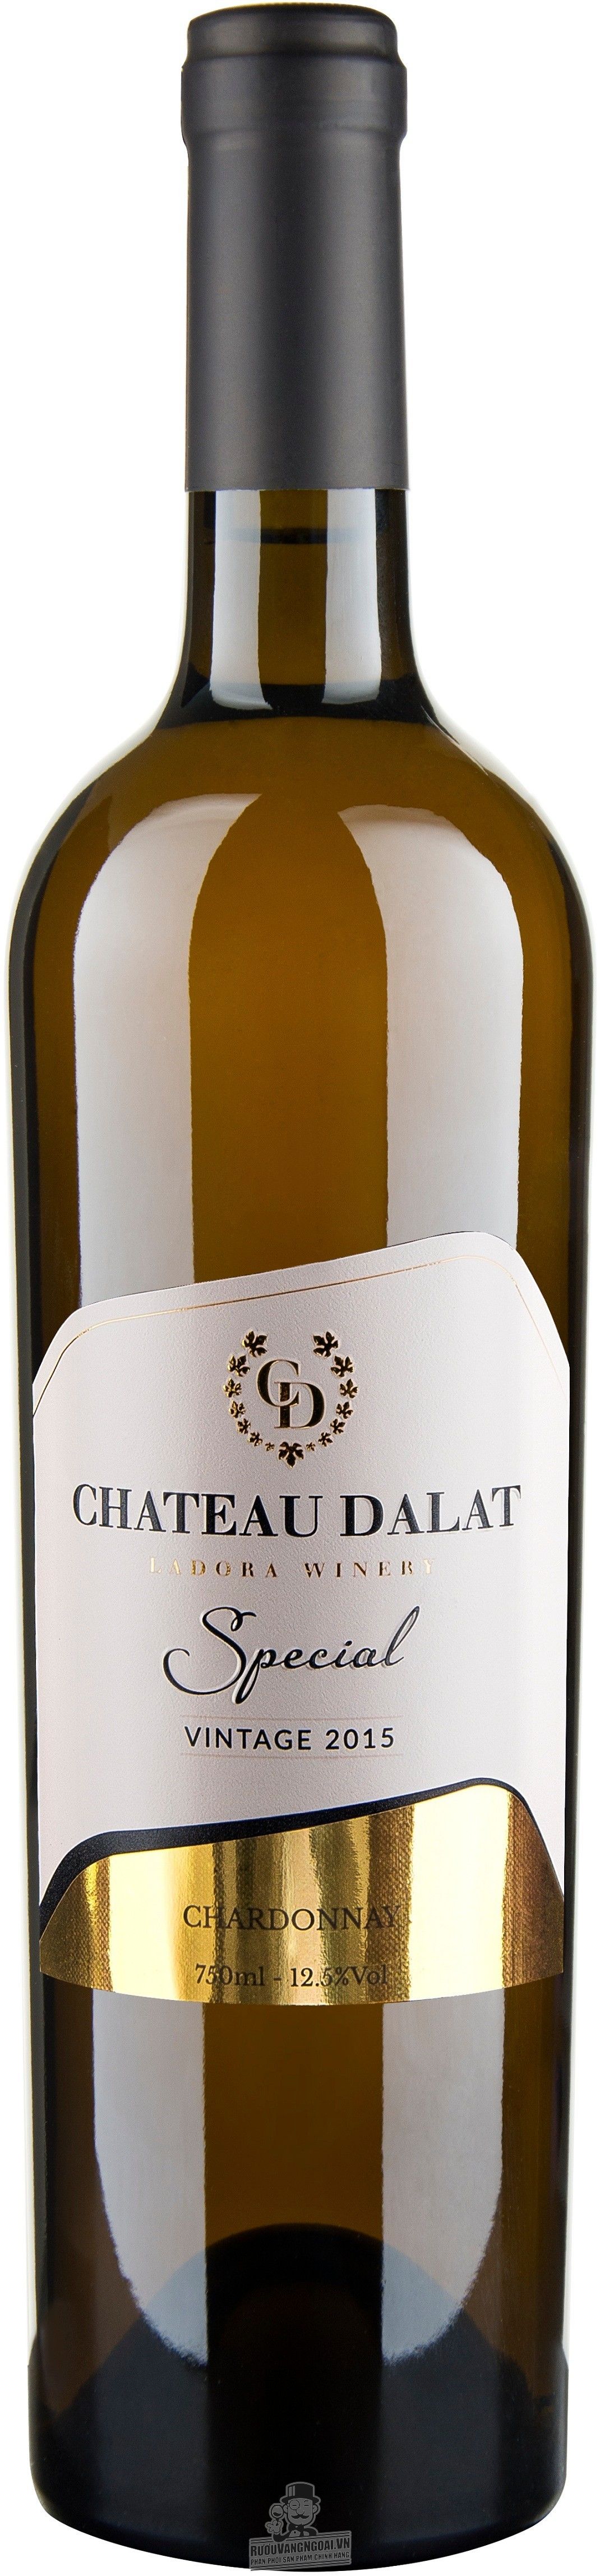 Kết quả hình ảnh cho vang chateau dalat special chardonnay